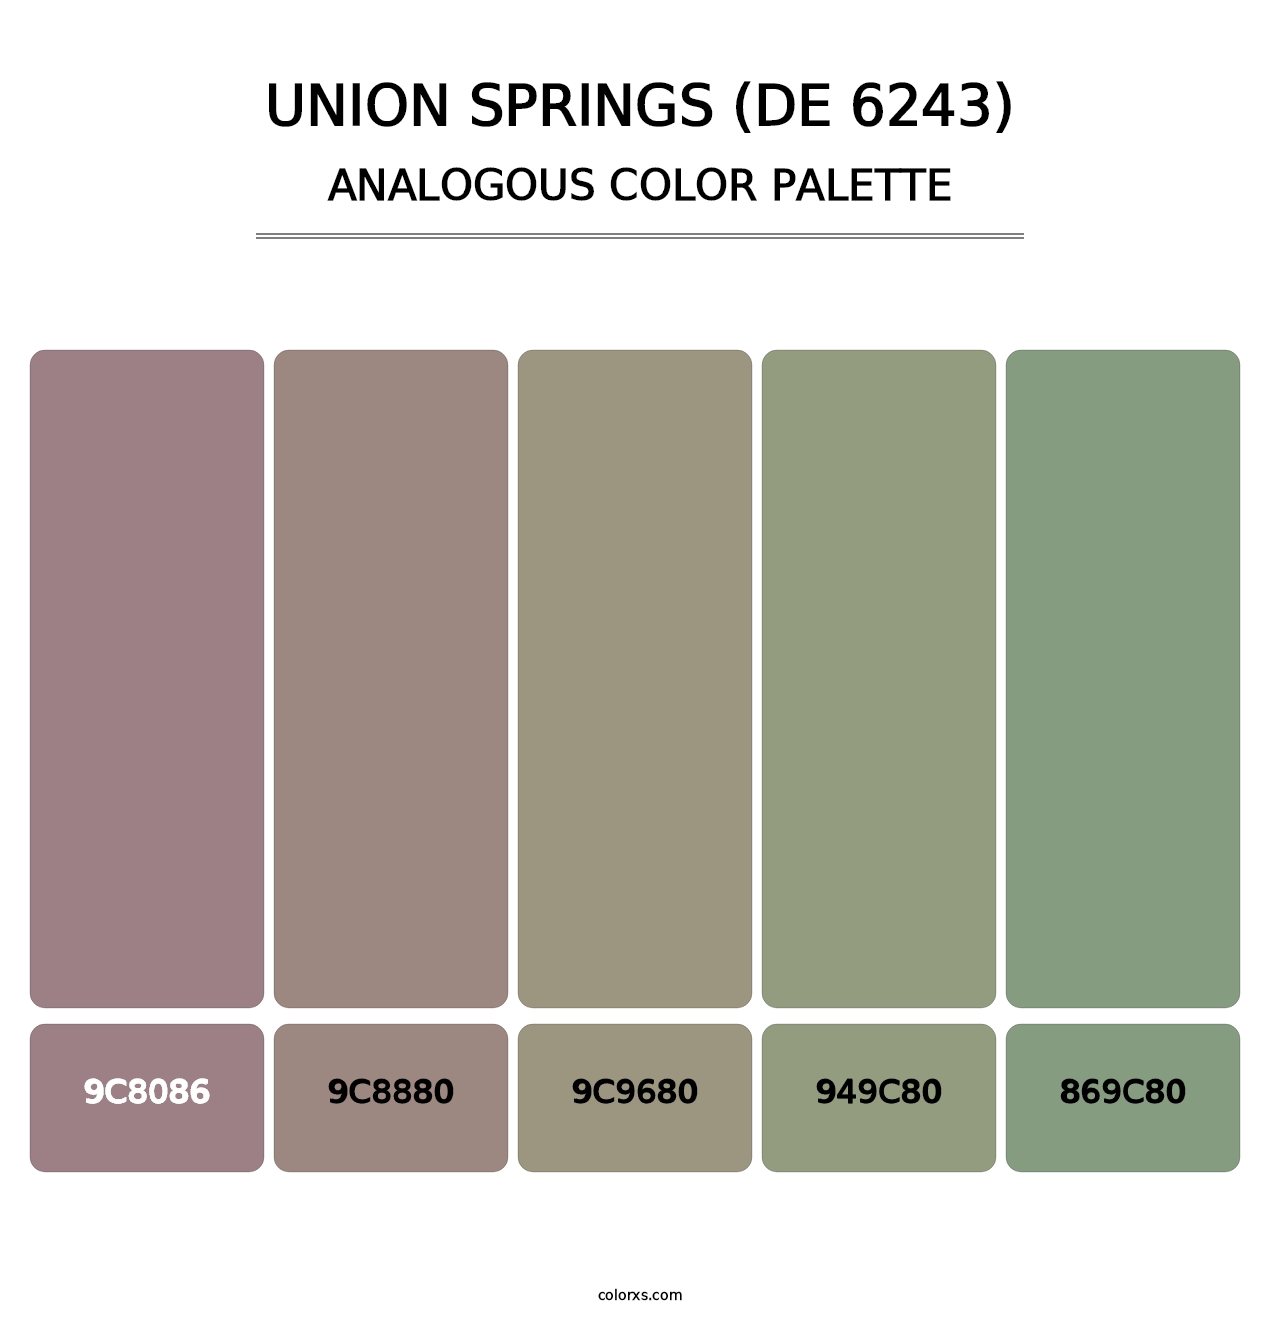 Union Springs (DE 6243) - Analogous Color Palette